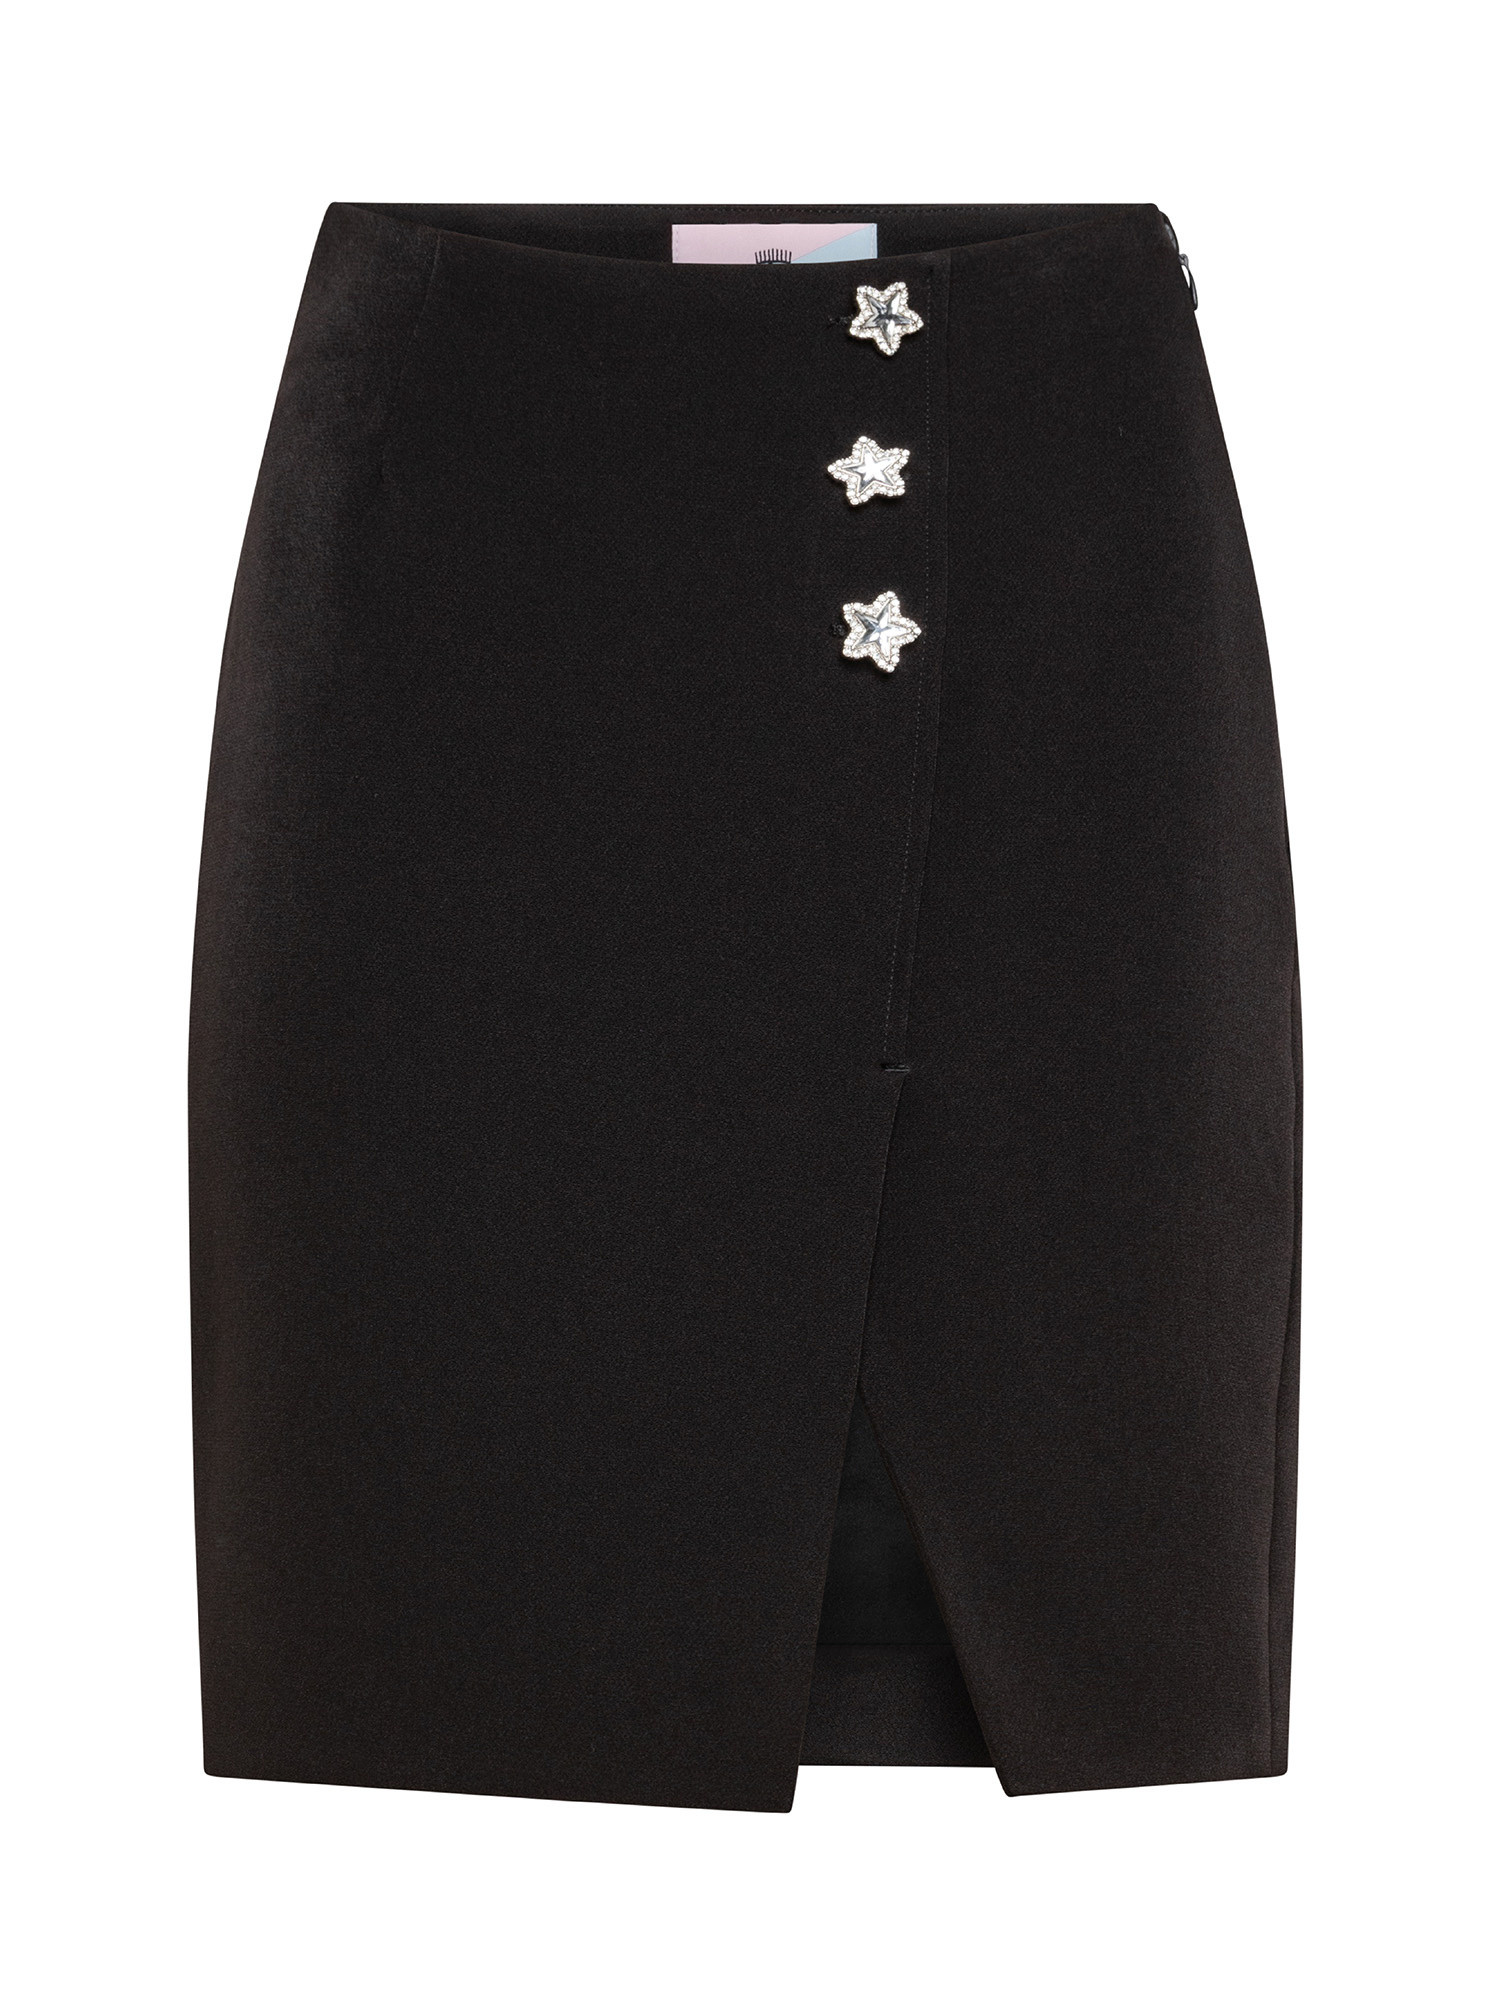 Skirt, Black, large image number 0